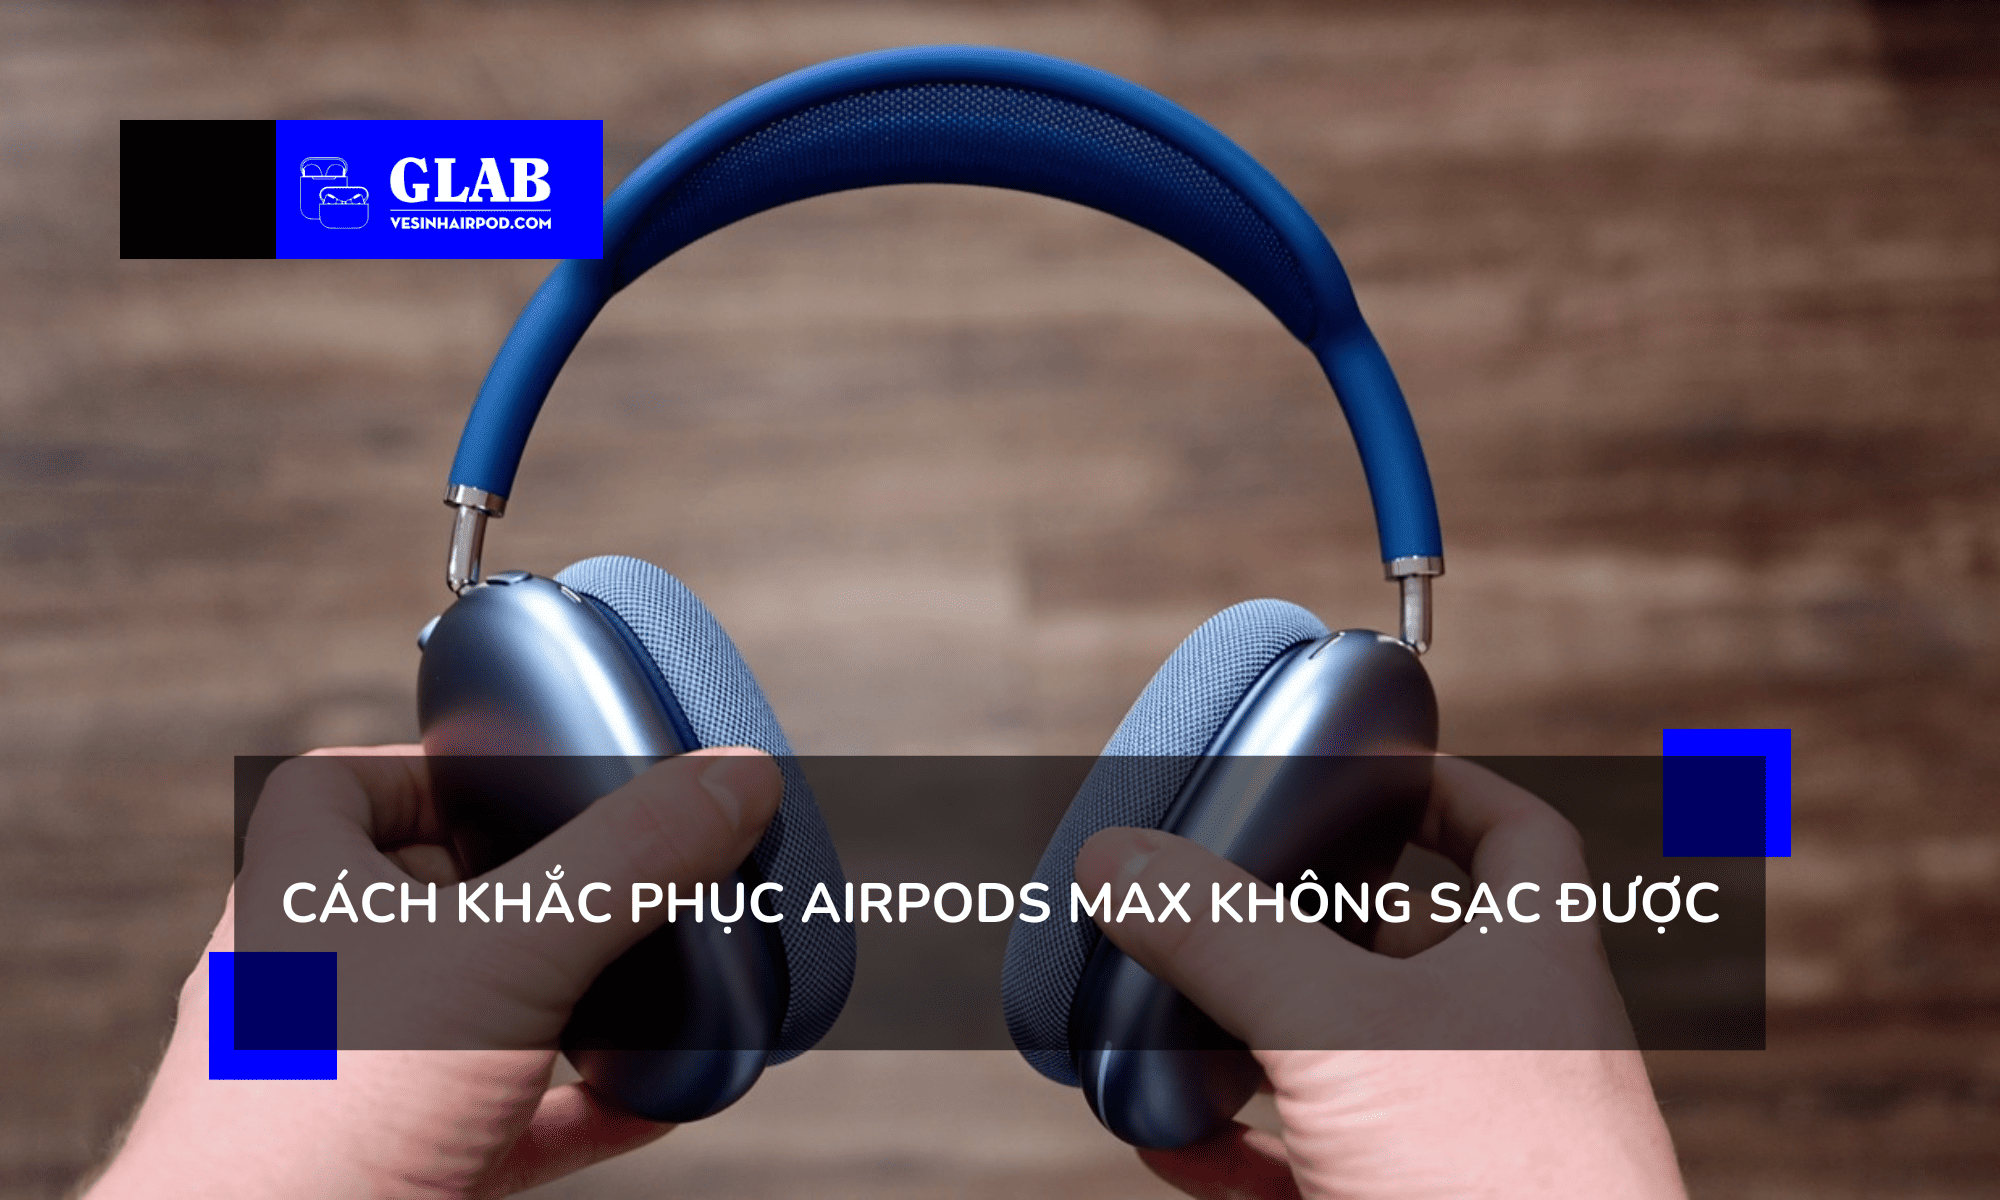 airpods-max-khong-sac-duoc